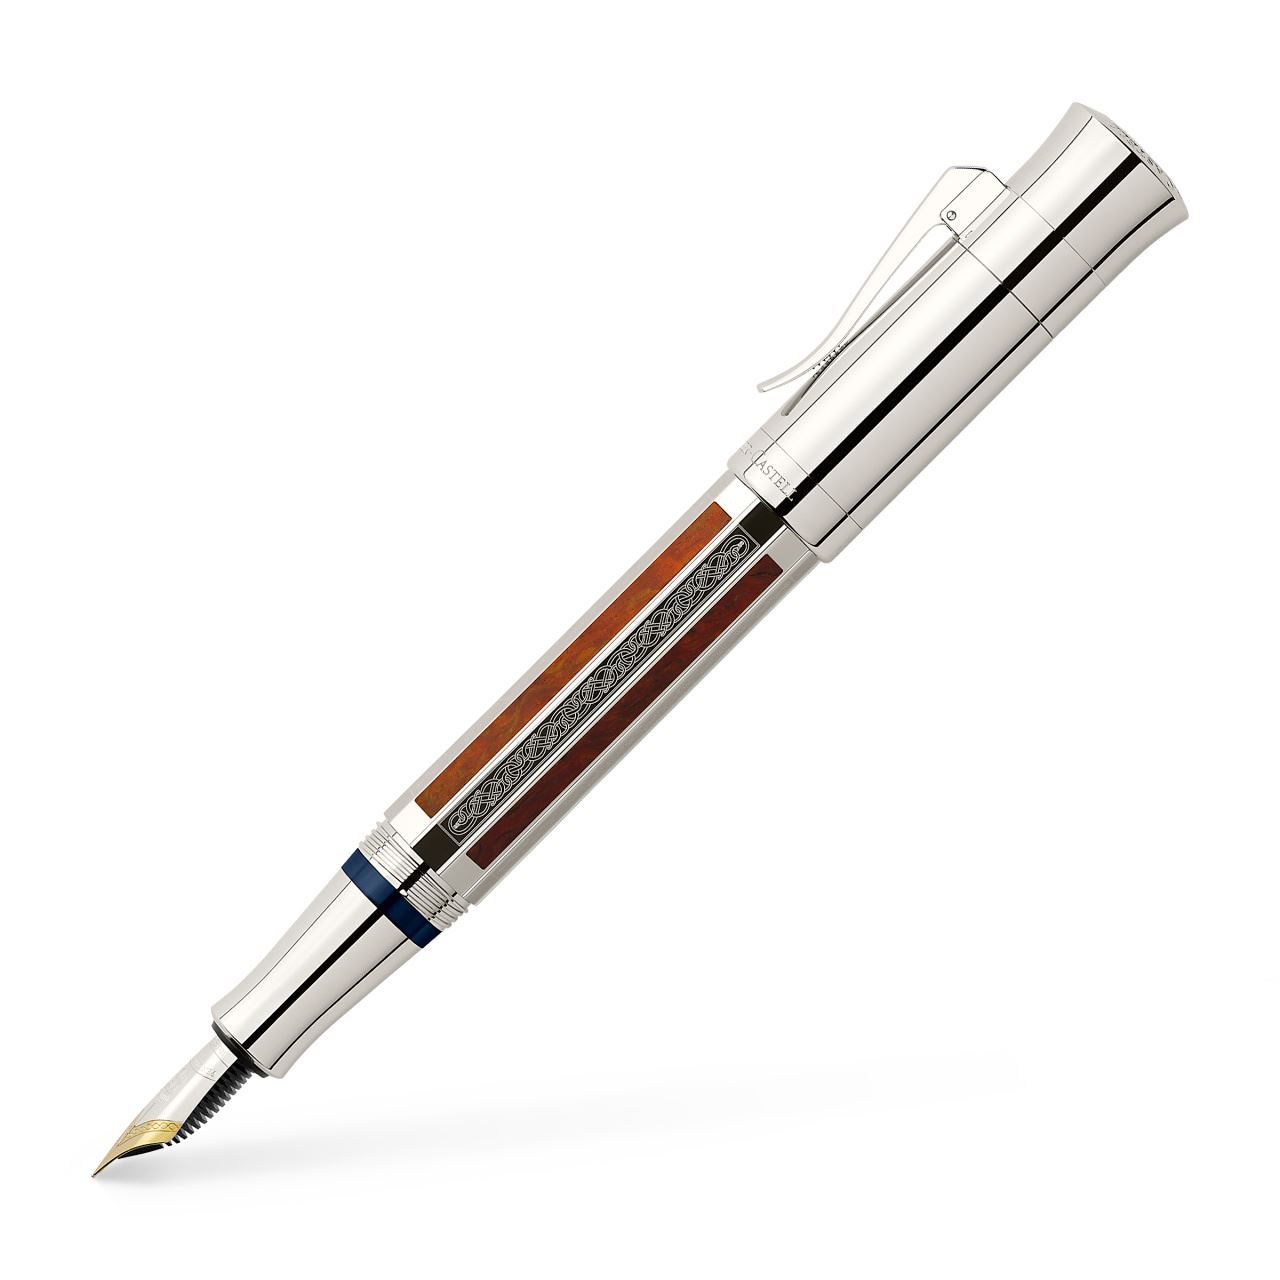 Graf-von-Faber-Castell - Penna stilografica Pen of the Year 2017, Fine